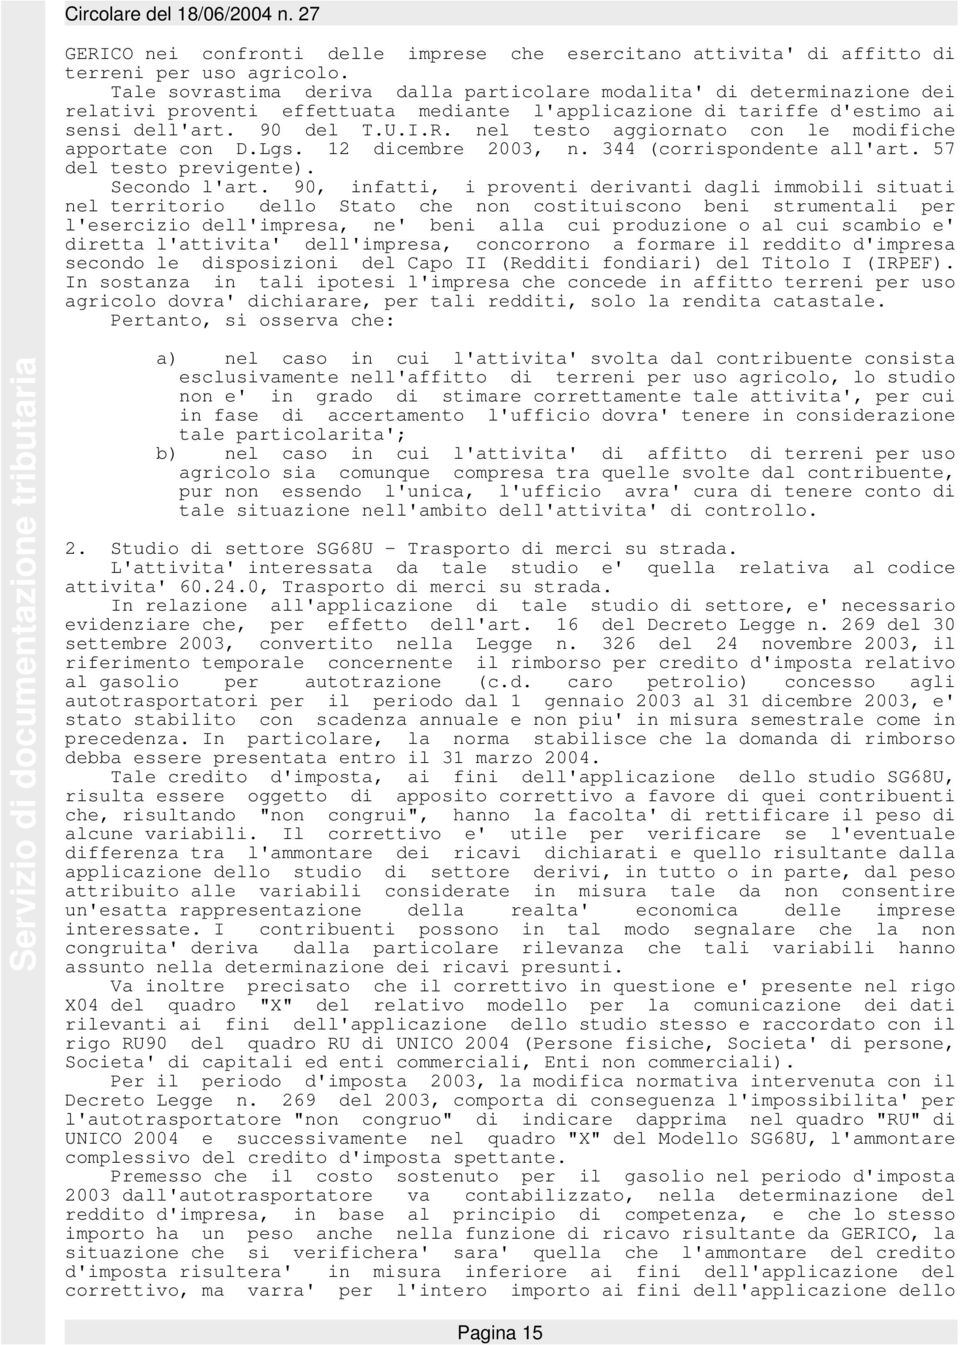 nel testo aggiornato con le modifiche apportate con D.Lgs. 12 dicembre 2003, n. 344 (corrispondente all'art. 57 del testo previgente). Secondo l'art.